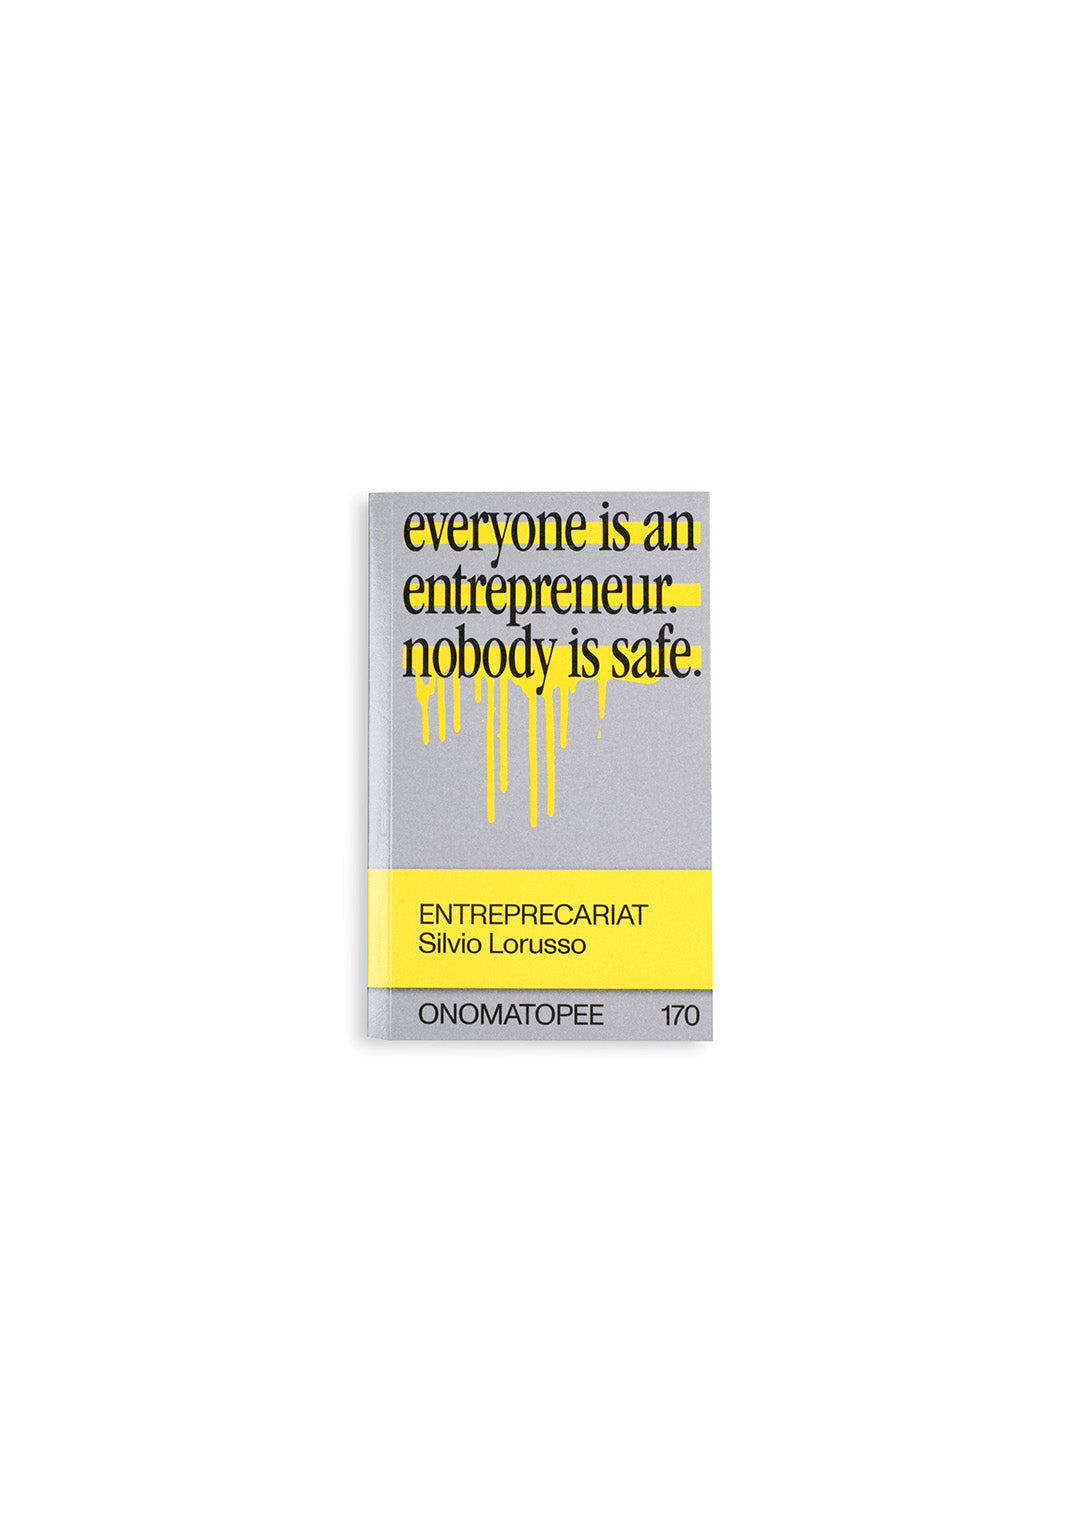 Entreprecariat: everyone is an entrepreneur nobody is safe